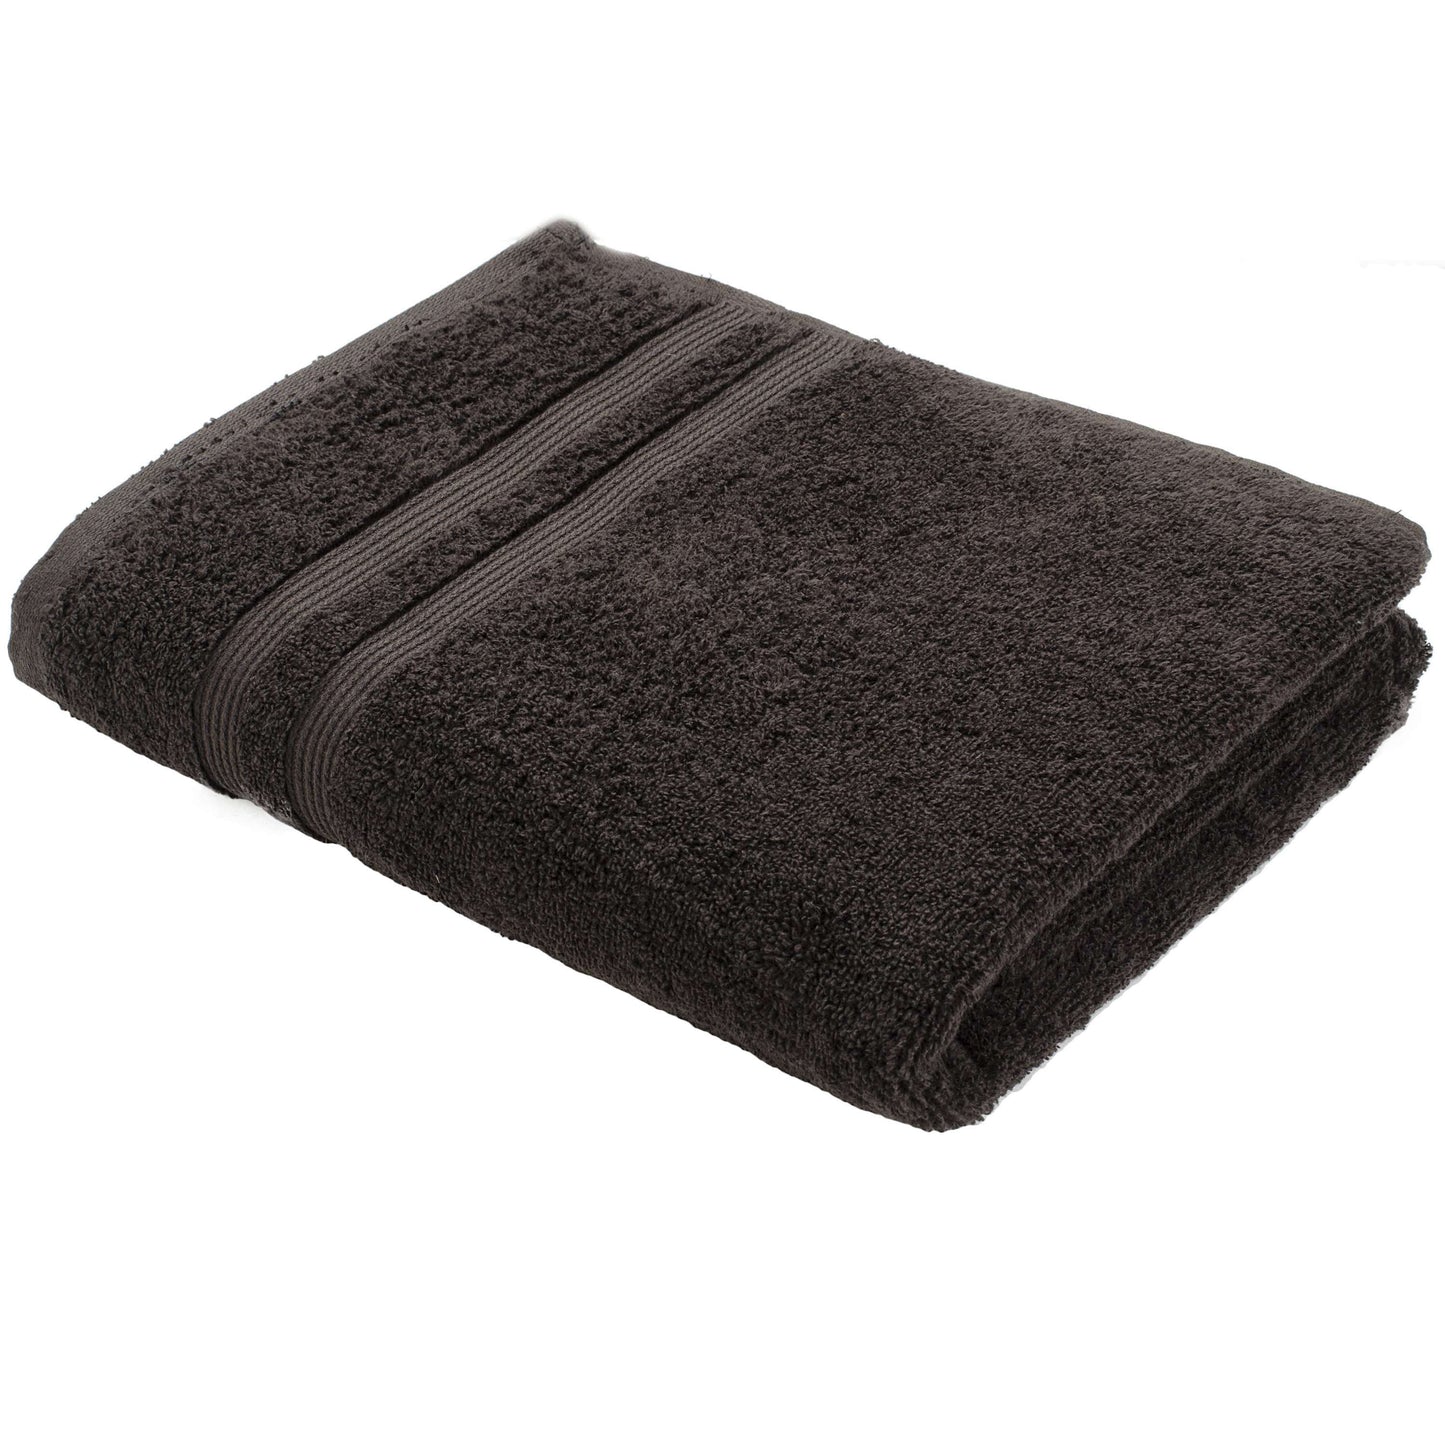 Turkish Bath Walso MS Bath Towel : Black - SWHF